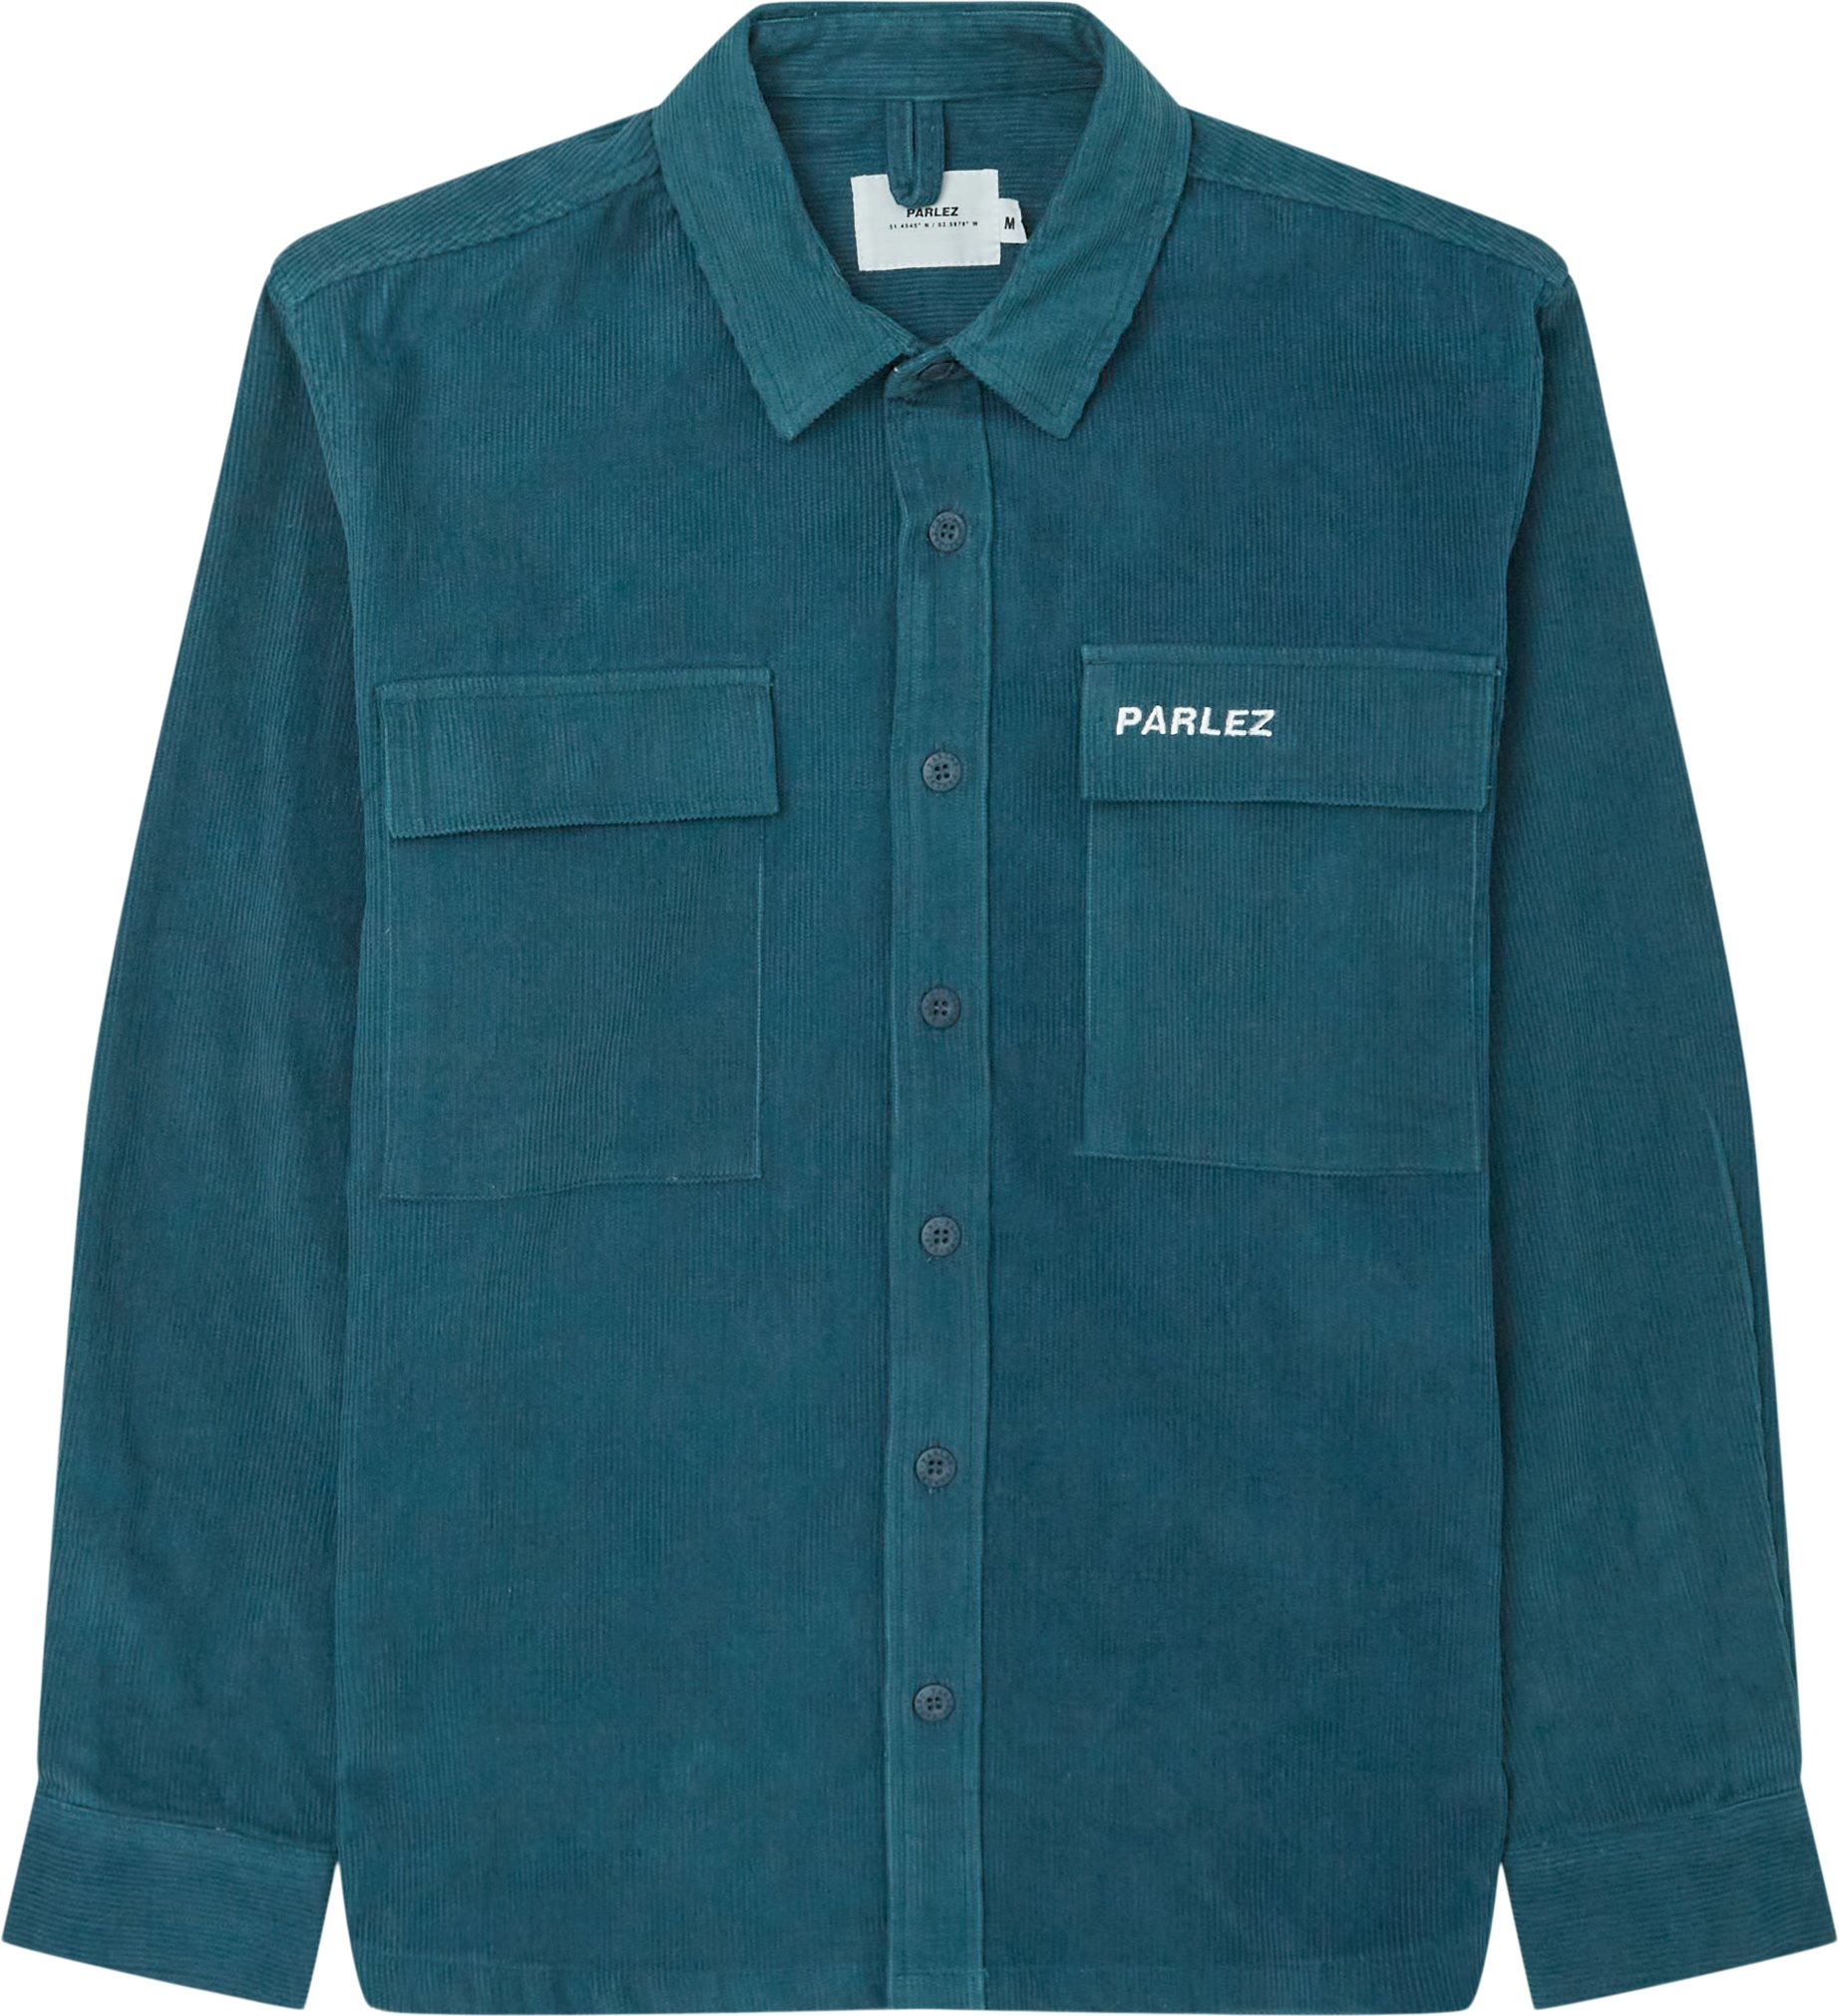 PARLEZ Shirts MAYREAU CORD SHIRT Green